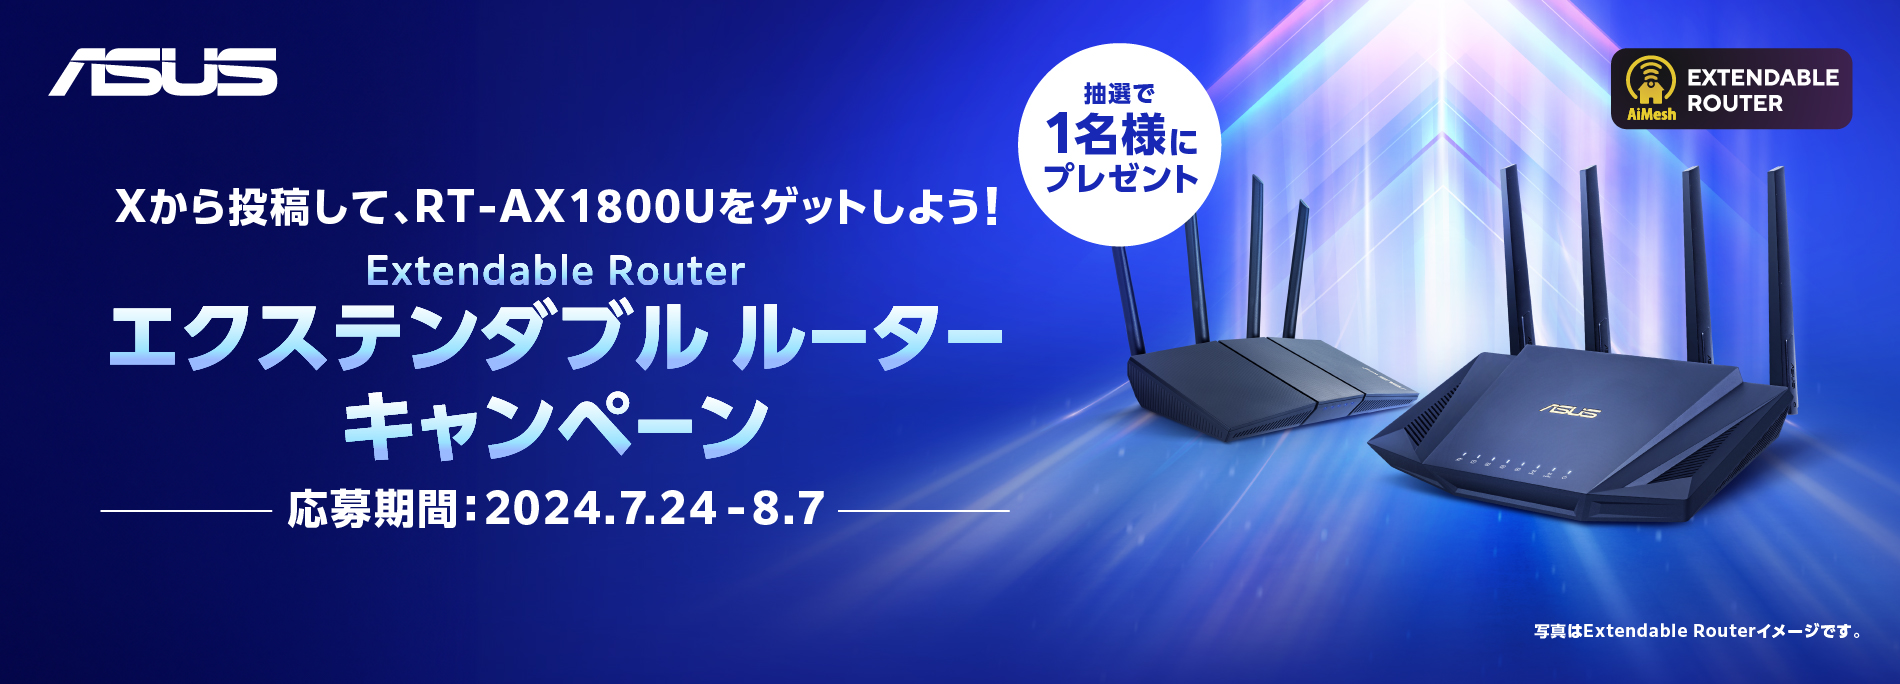 Extendable Router (エクステンダブル ルーター) X キャンペーン